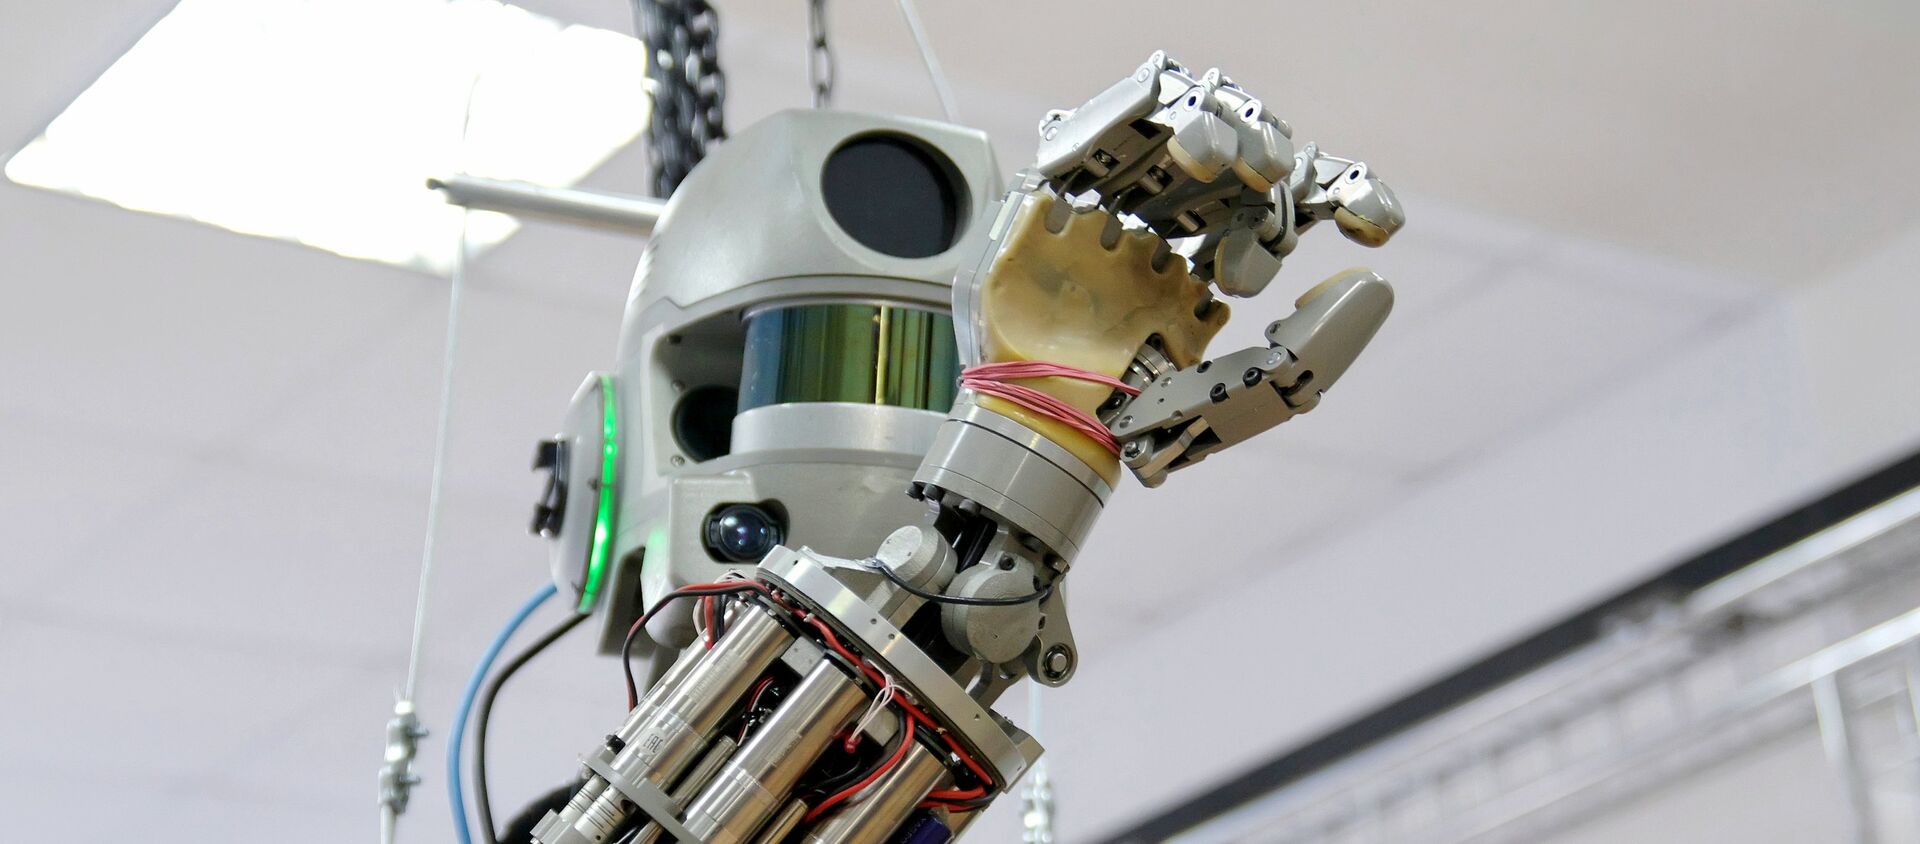 El robot ruso Fedor, el 'familiar' de la nueva creación de Rosatom - Sputnik Mundo, 1920, 27.07.2020